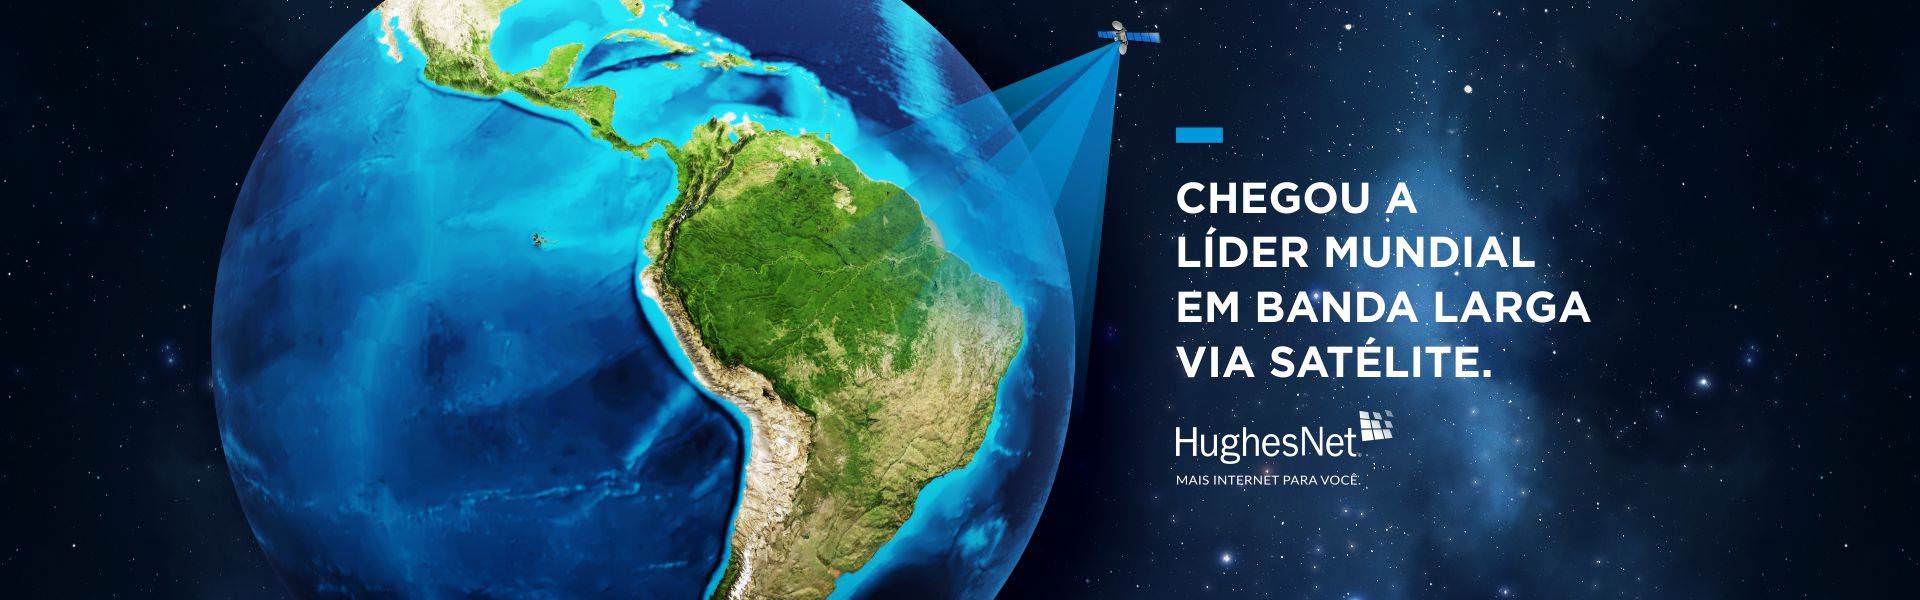 Internet Por Satélite HughesNet em Cáceres no Mato Grosso